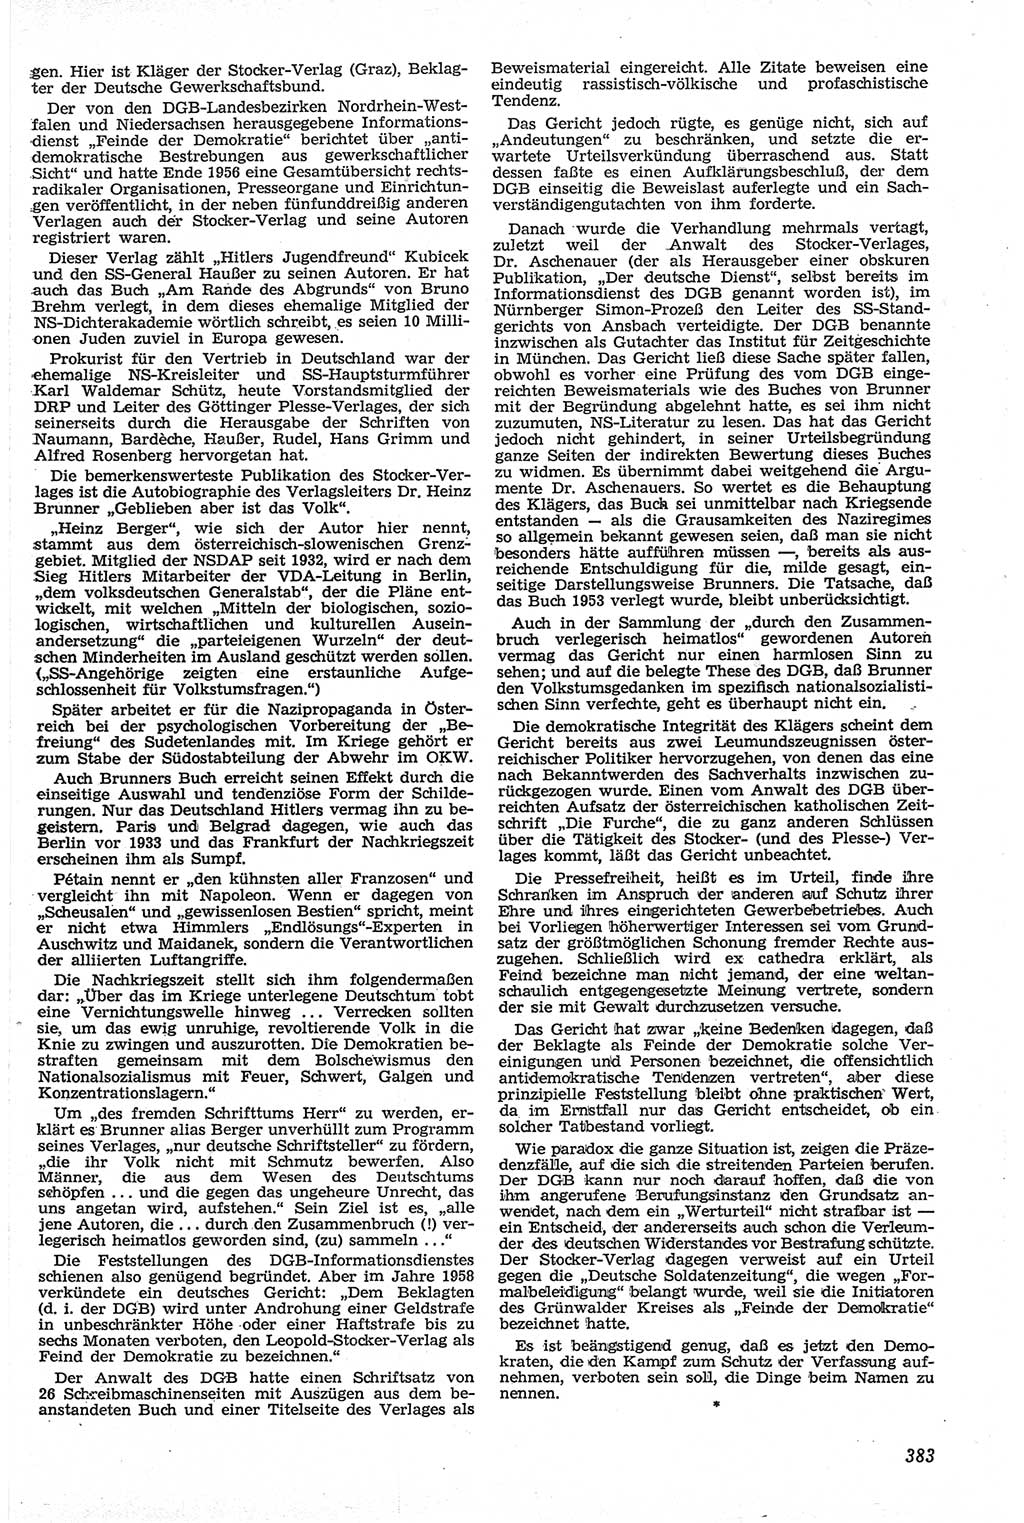 Neue Justiz (NJ), Zeitschrift für Recht und Rechtswissenschaft [Deutsche Demokratische Republik (DDR)], 13. Jahrgang 1959, Seite 383 (NJ DDR 1959, S. 383)